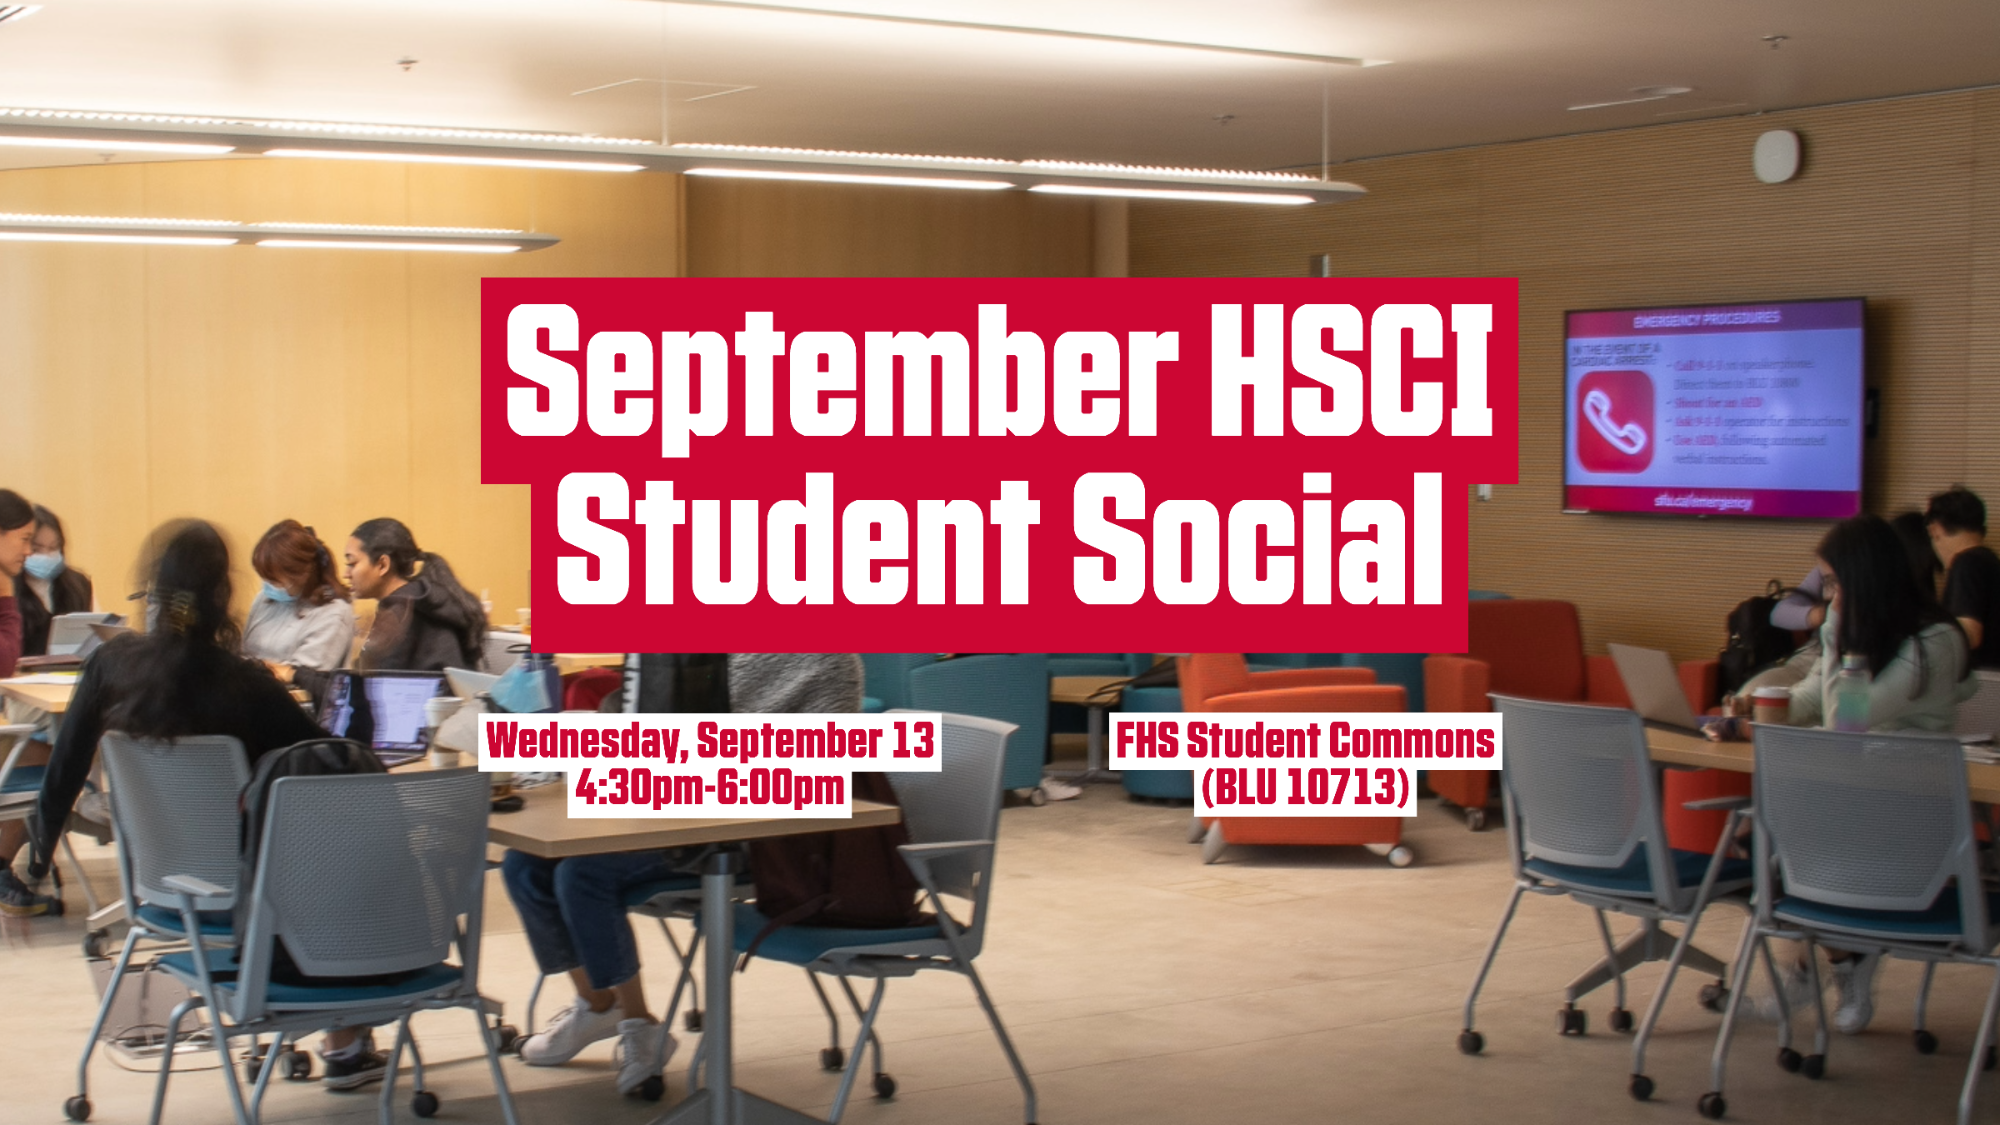 Wednesday, September 13: September HSCI Student Social